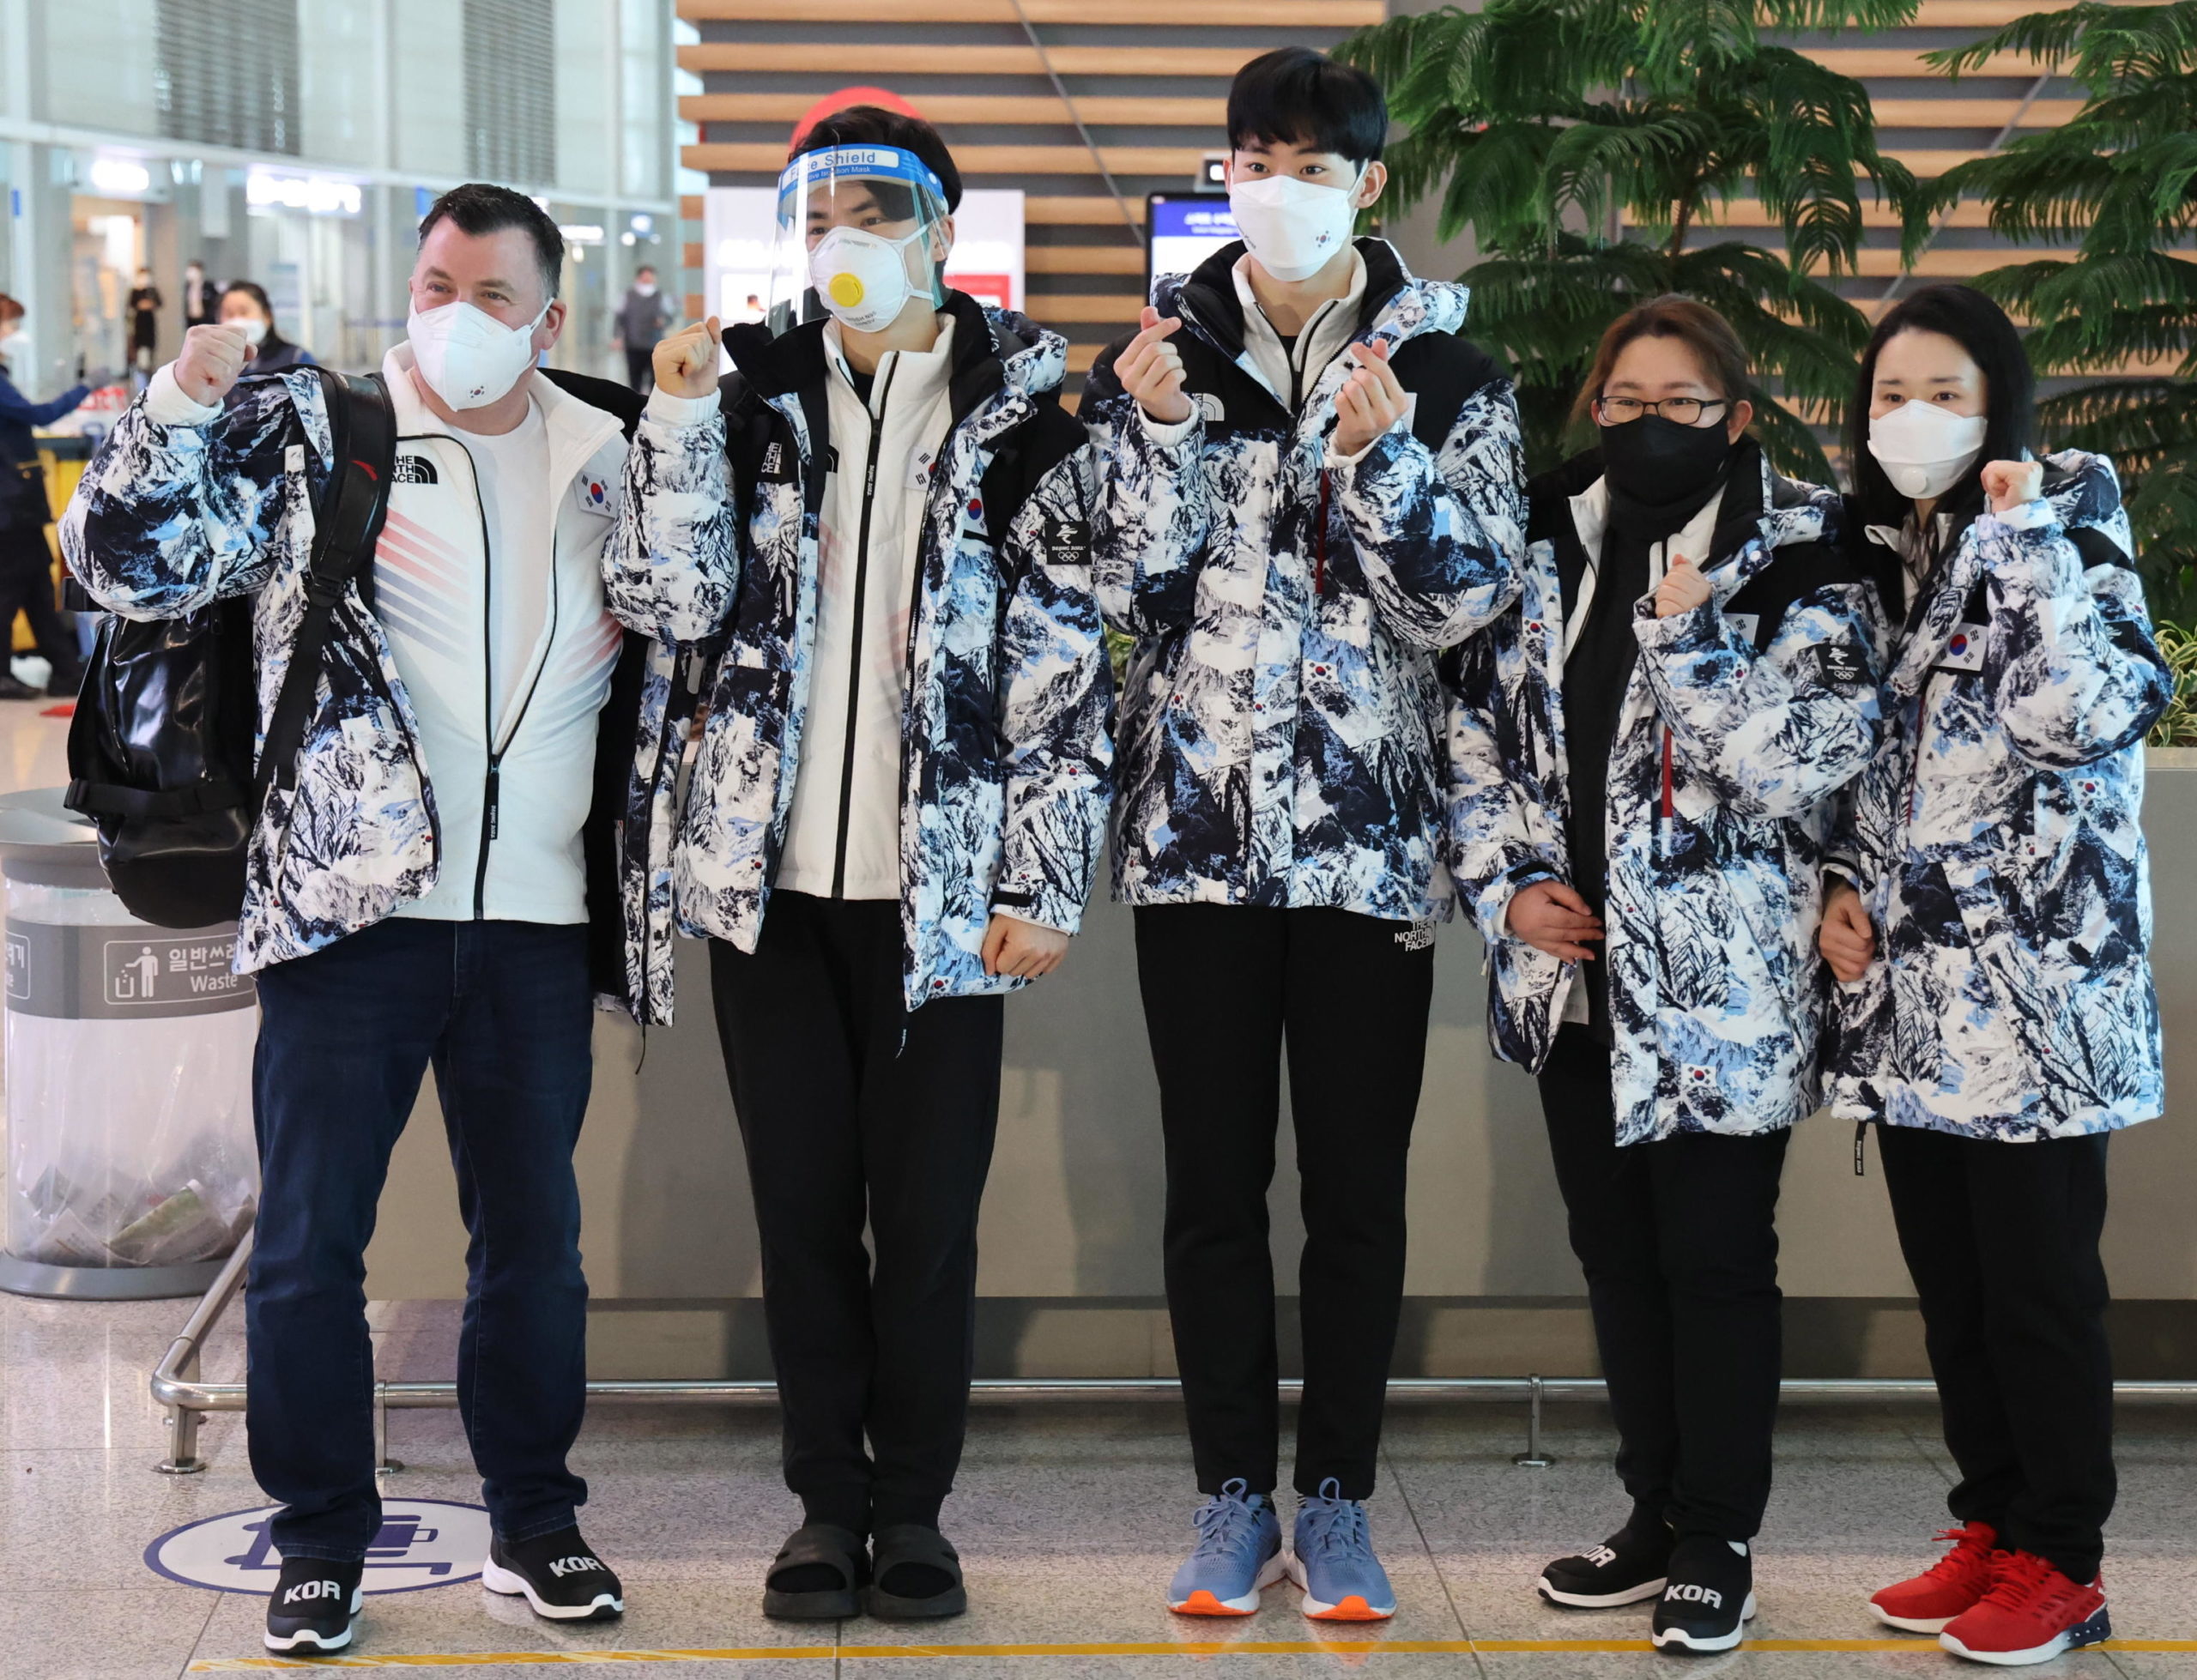 La squadra di Pattinaggio sudcoreana posa prima della partenza per Pechino